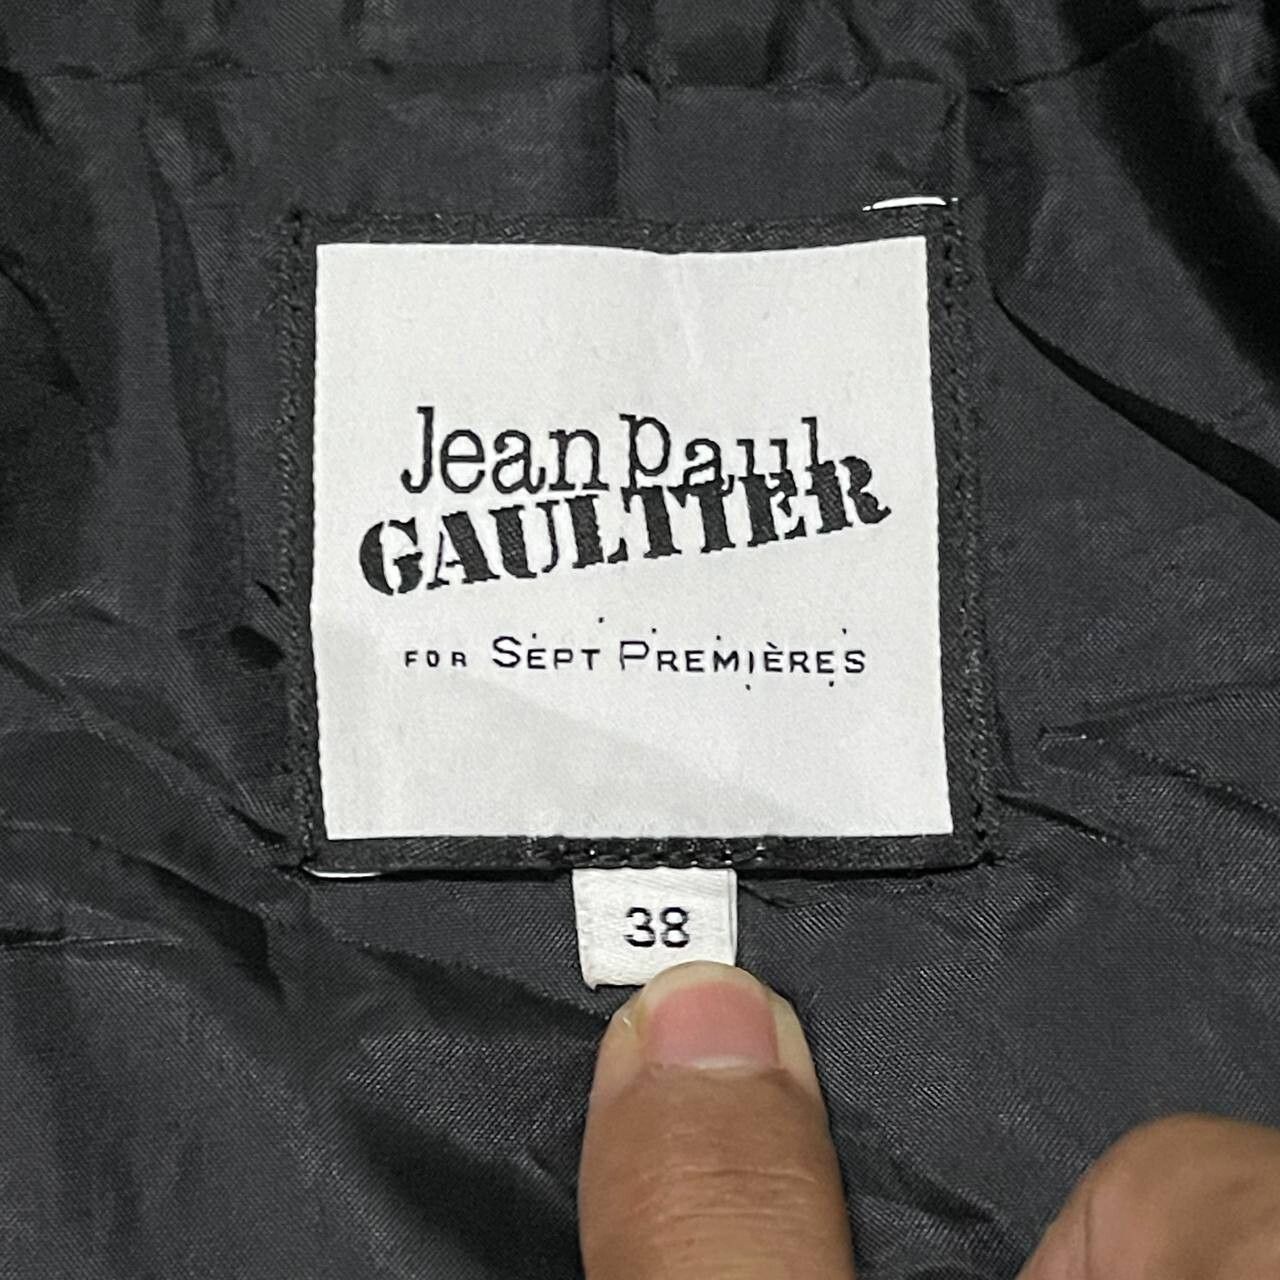 JPG Jean Paul Gaultier for Sept Premieres Button Less Coat - 9